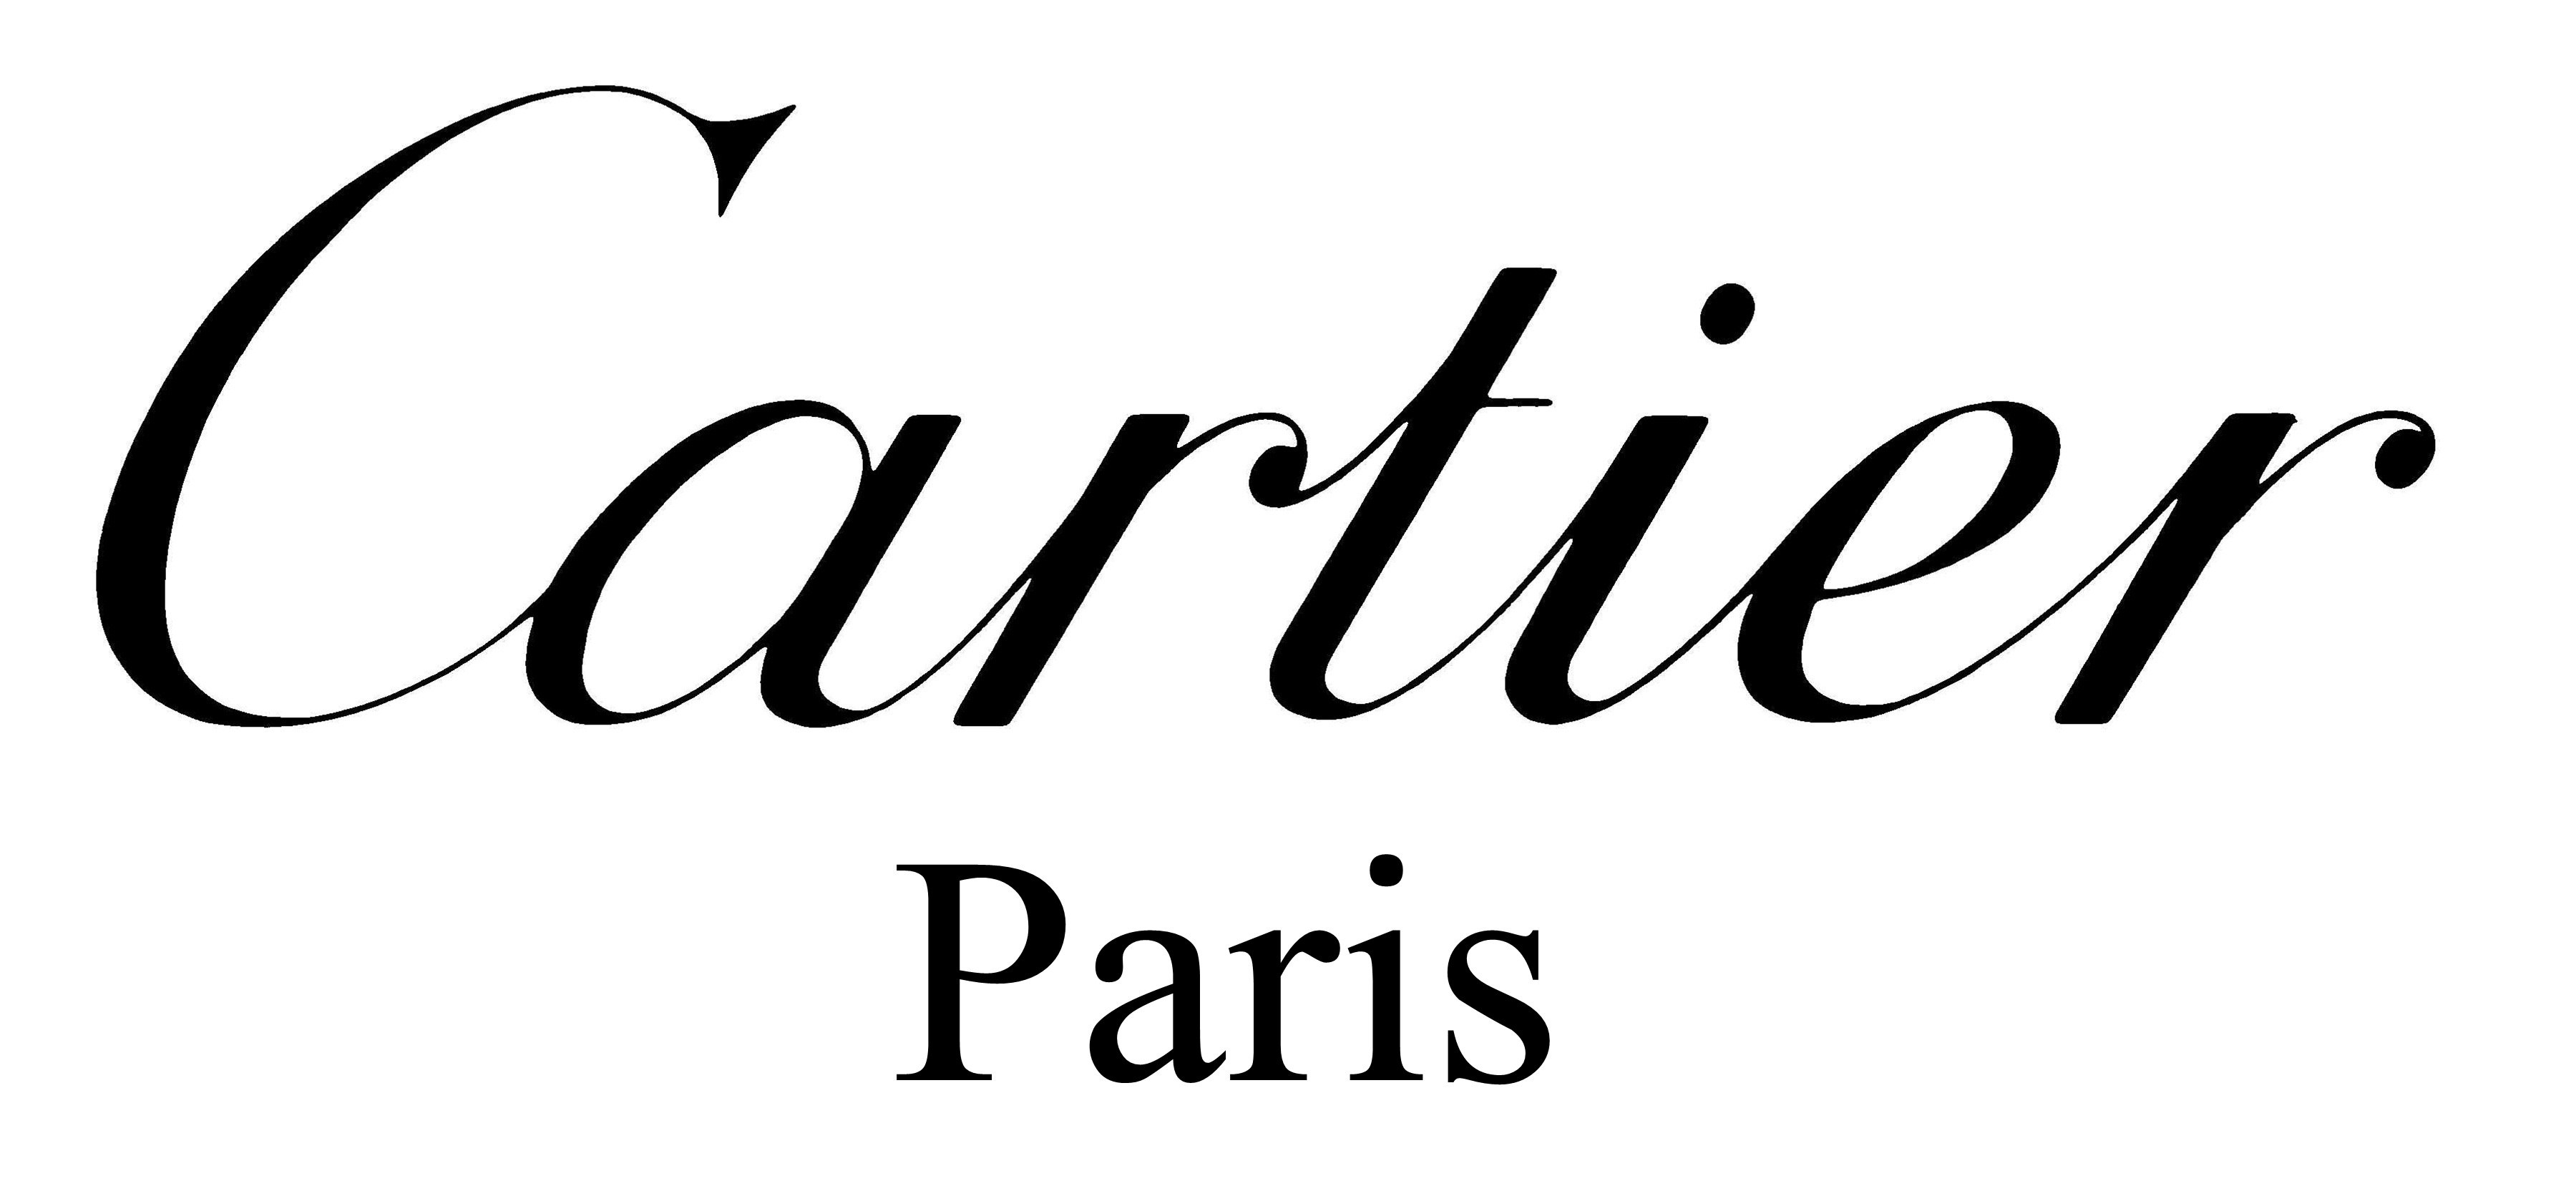 jean cartier logo vector